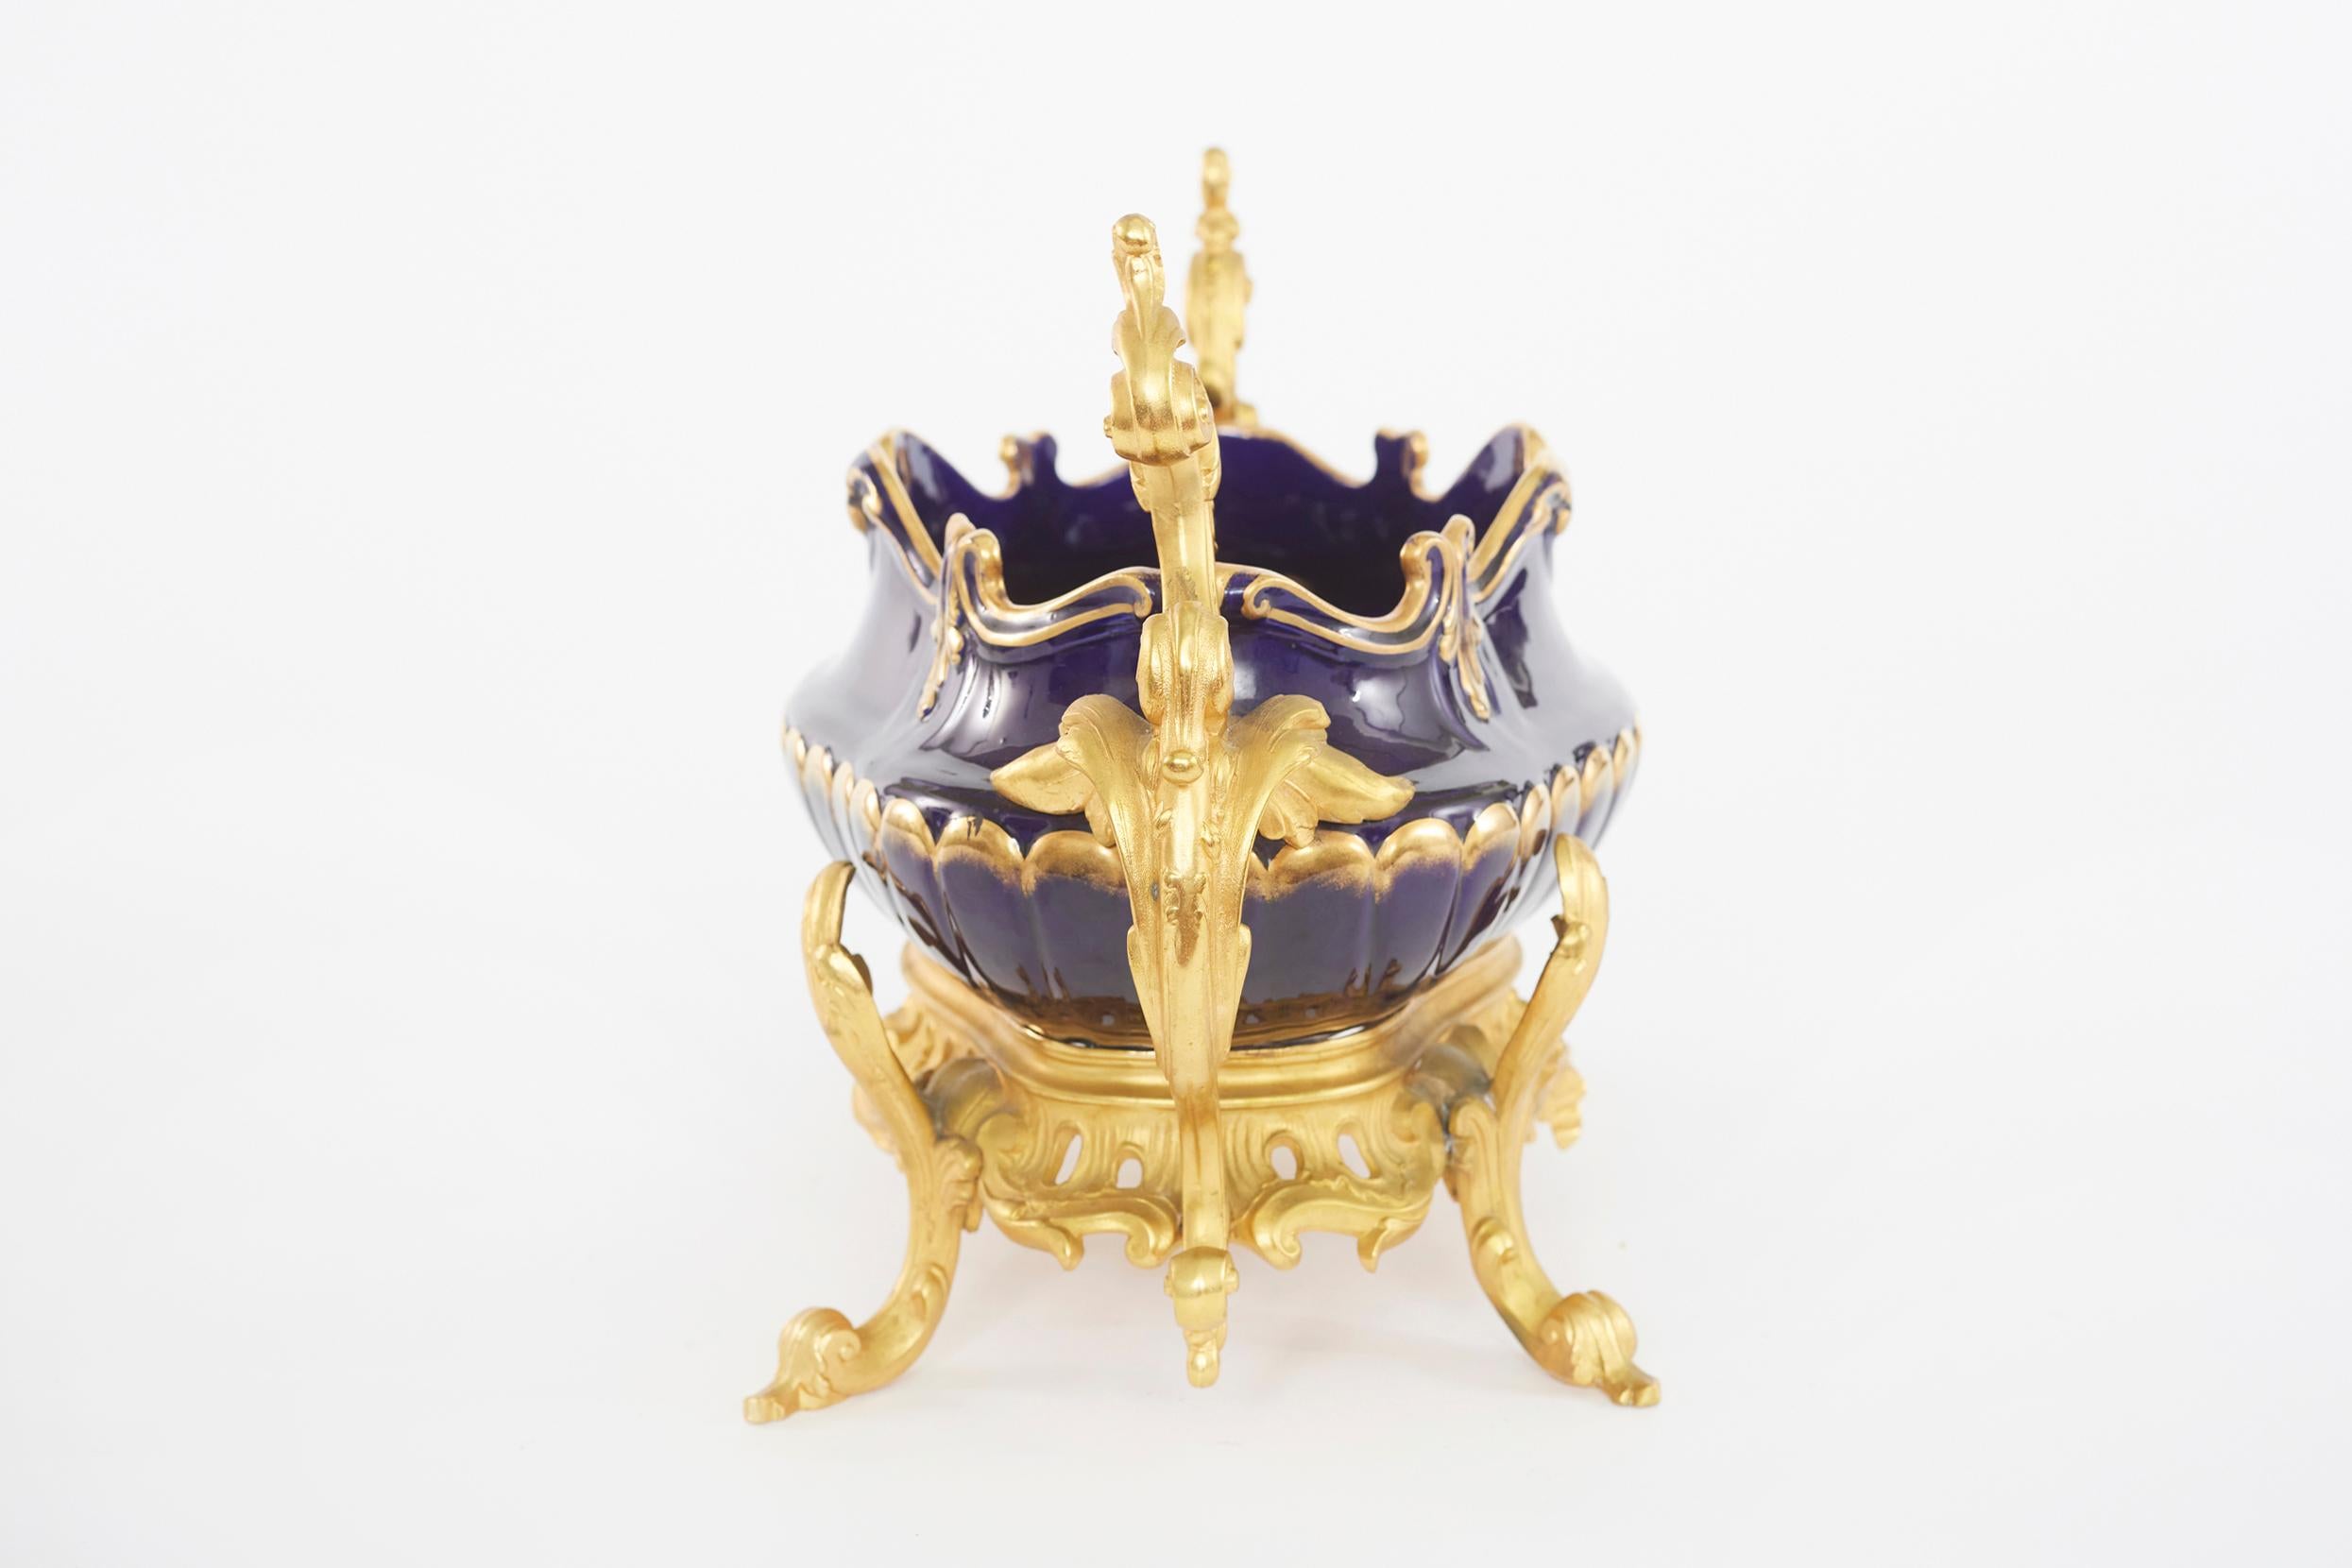 19. Jahrhundert Hand gemalt Gold Design Porzellan mit Fuß Bronze montiert dekorative Mittelstück mit Seitengriffen. Das Mittelstück ist in hervorragendem Zustand. Leichte alters- und gebrauchsbedingte Abnutzung. Das Stück steht etwa 18 Zoll lang X